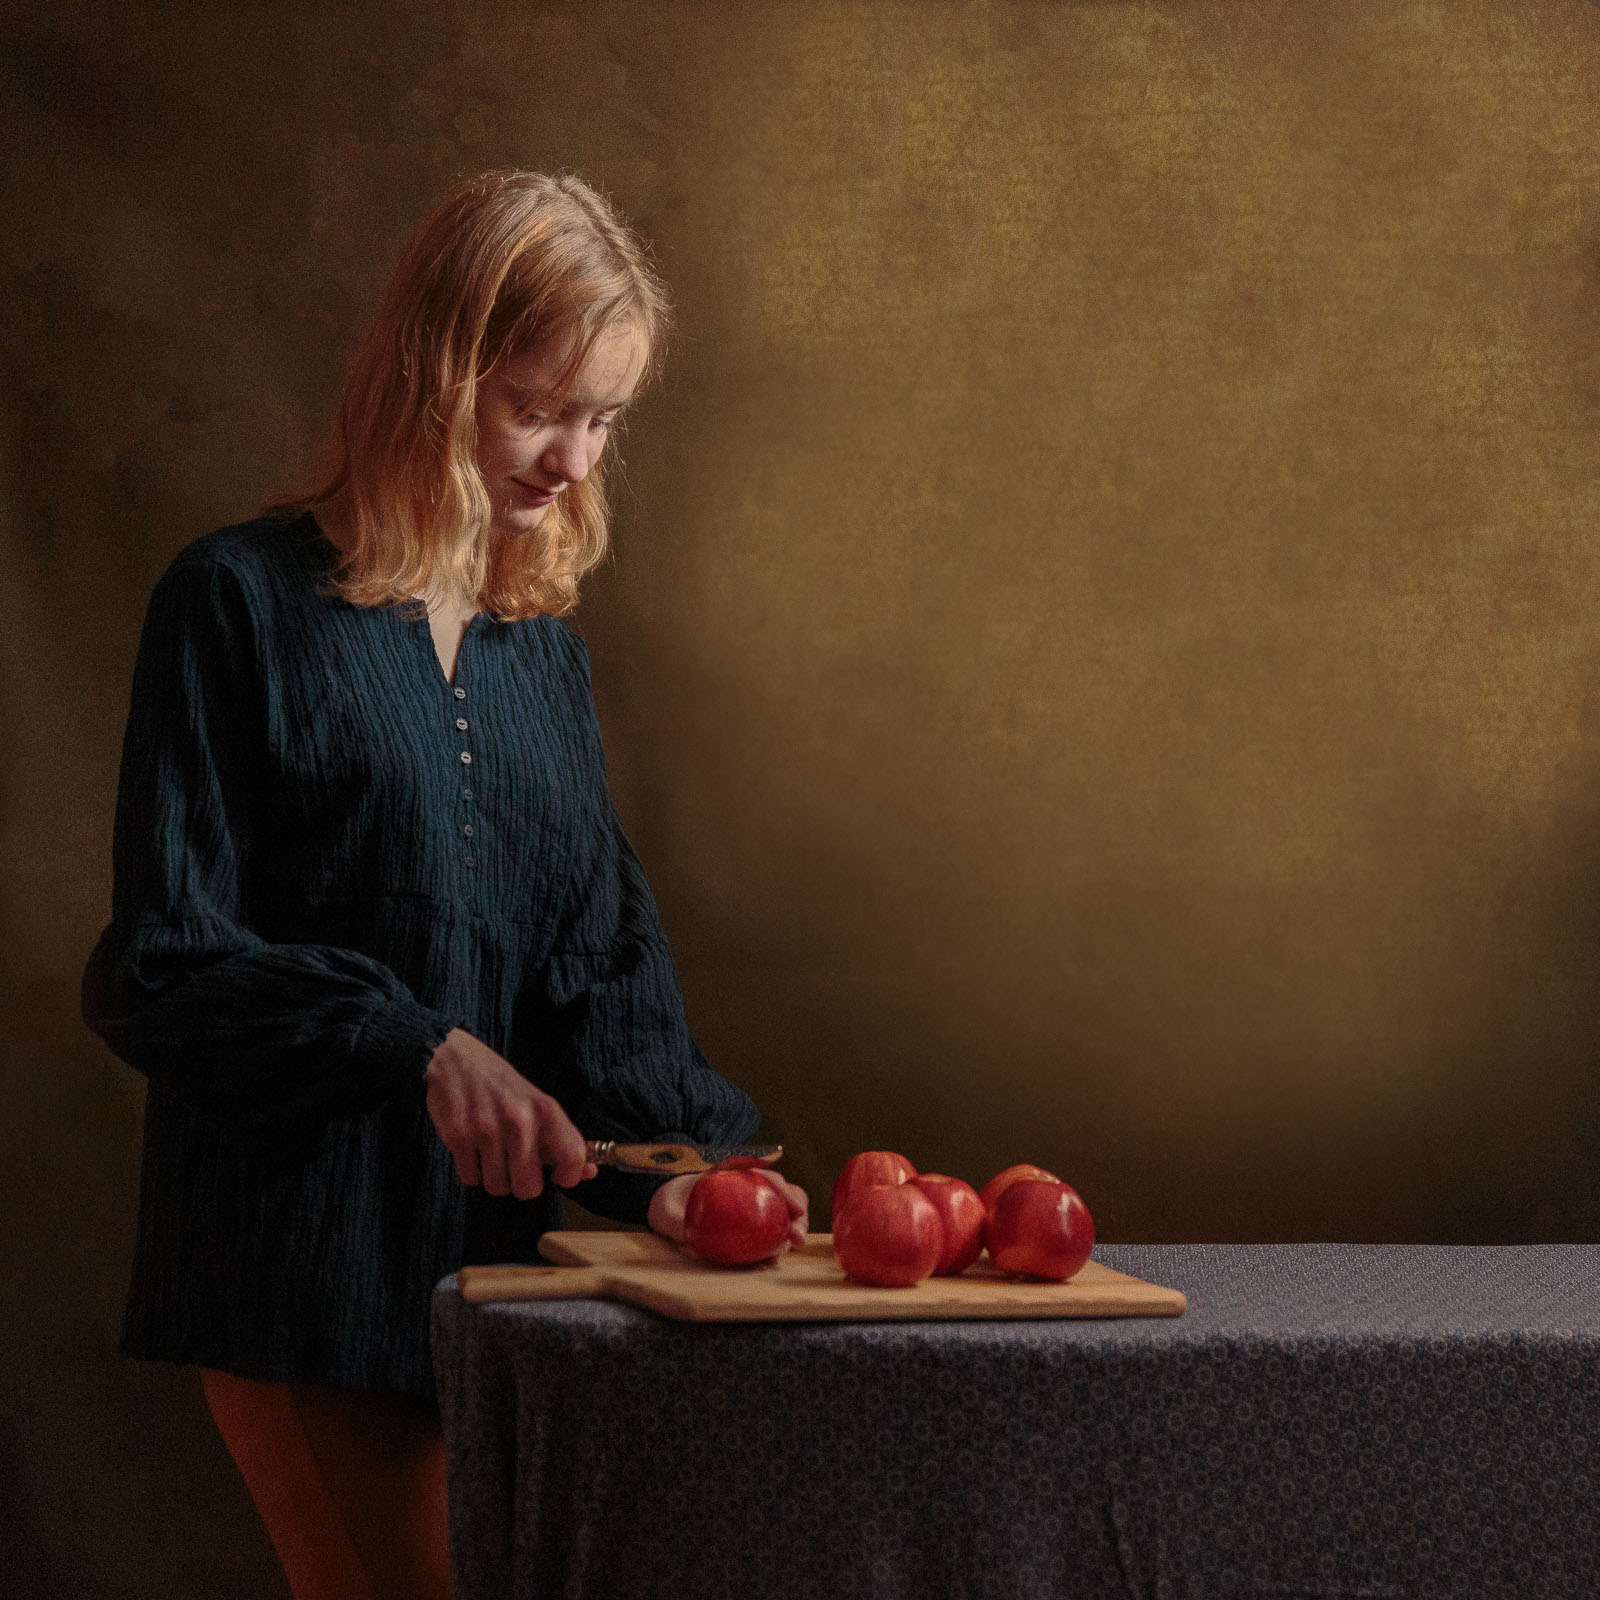 Meisje snijdt appels